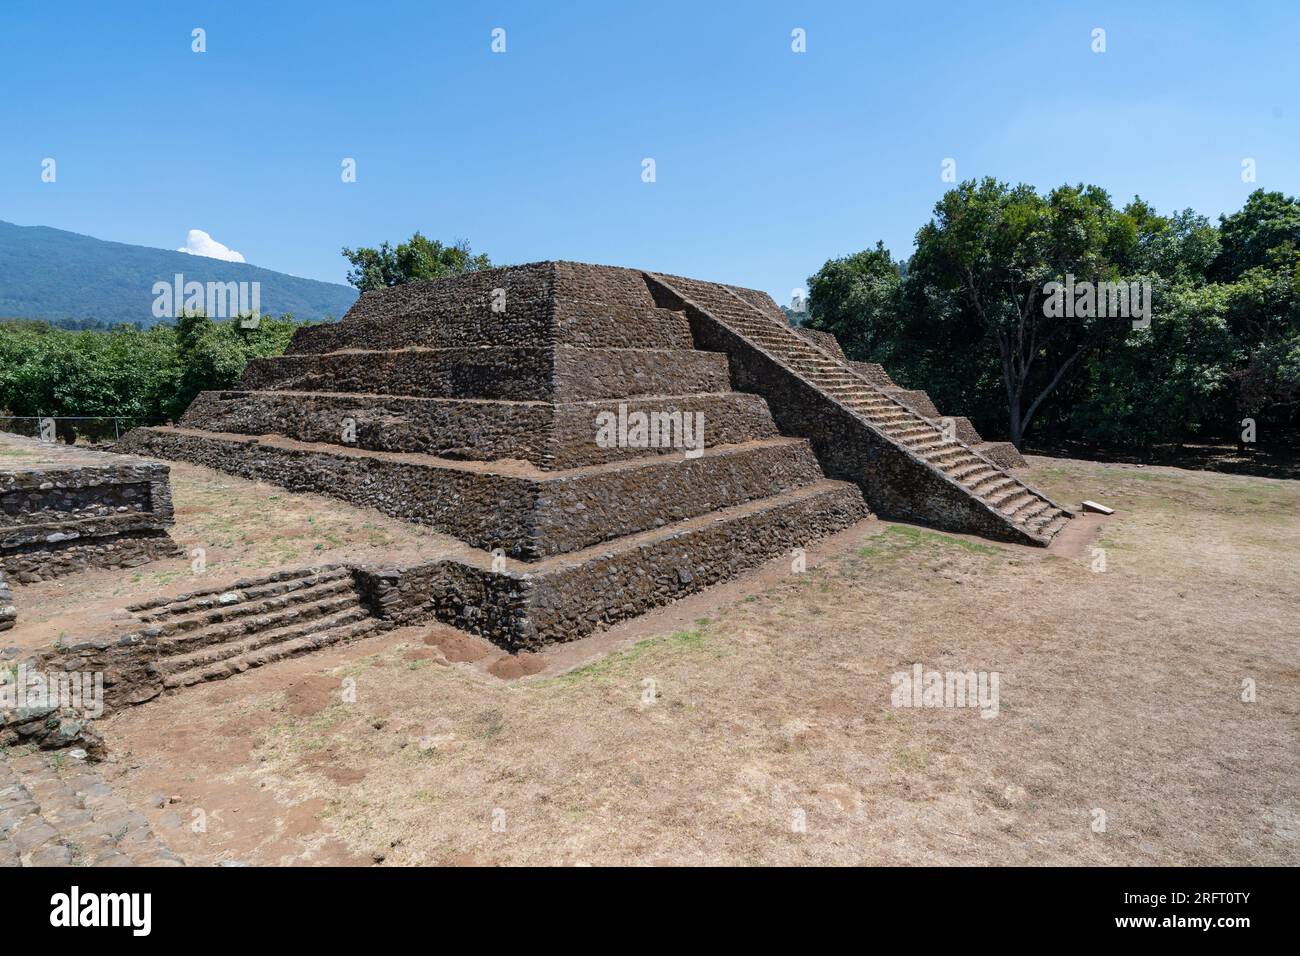 Ancienne pyramide à sept couches dans le site archéologique de Tingambato, Michoacan, Mexique. Le site a été construit autour de 450 par une civilisation indéterminée et fouillé seulement en 1979. Banque D'Images